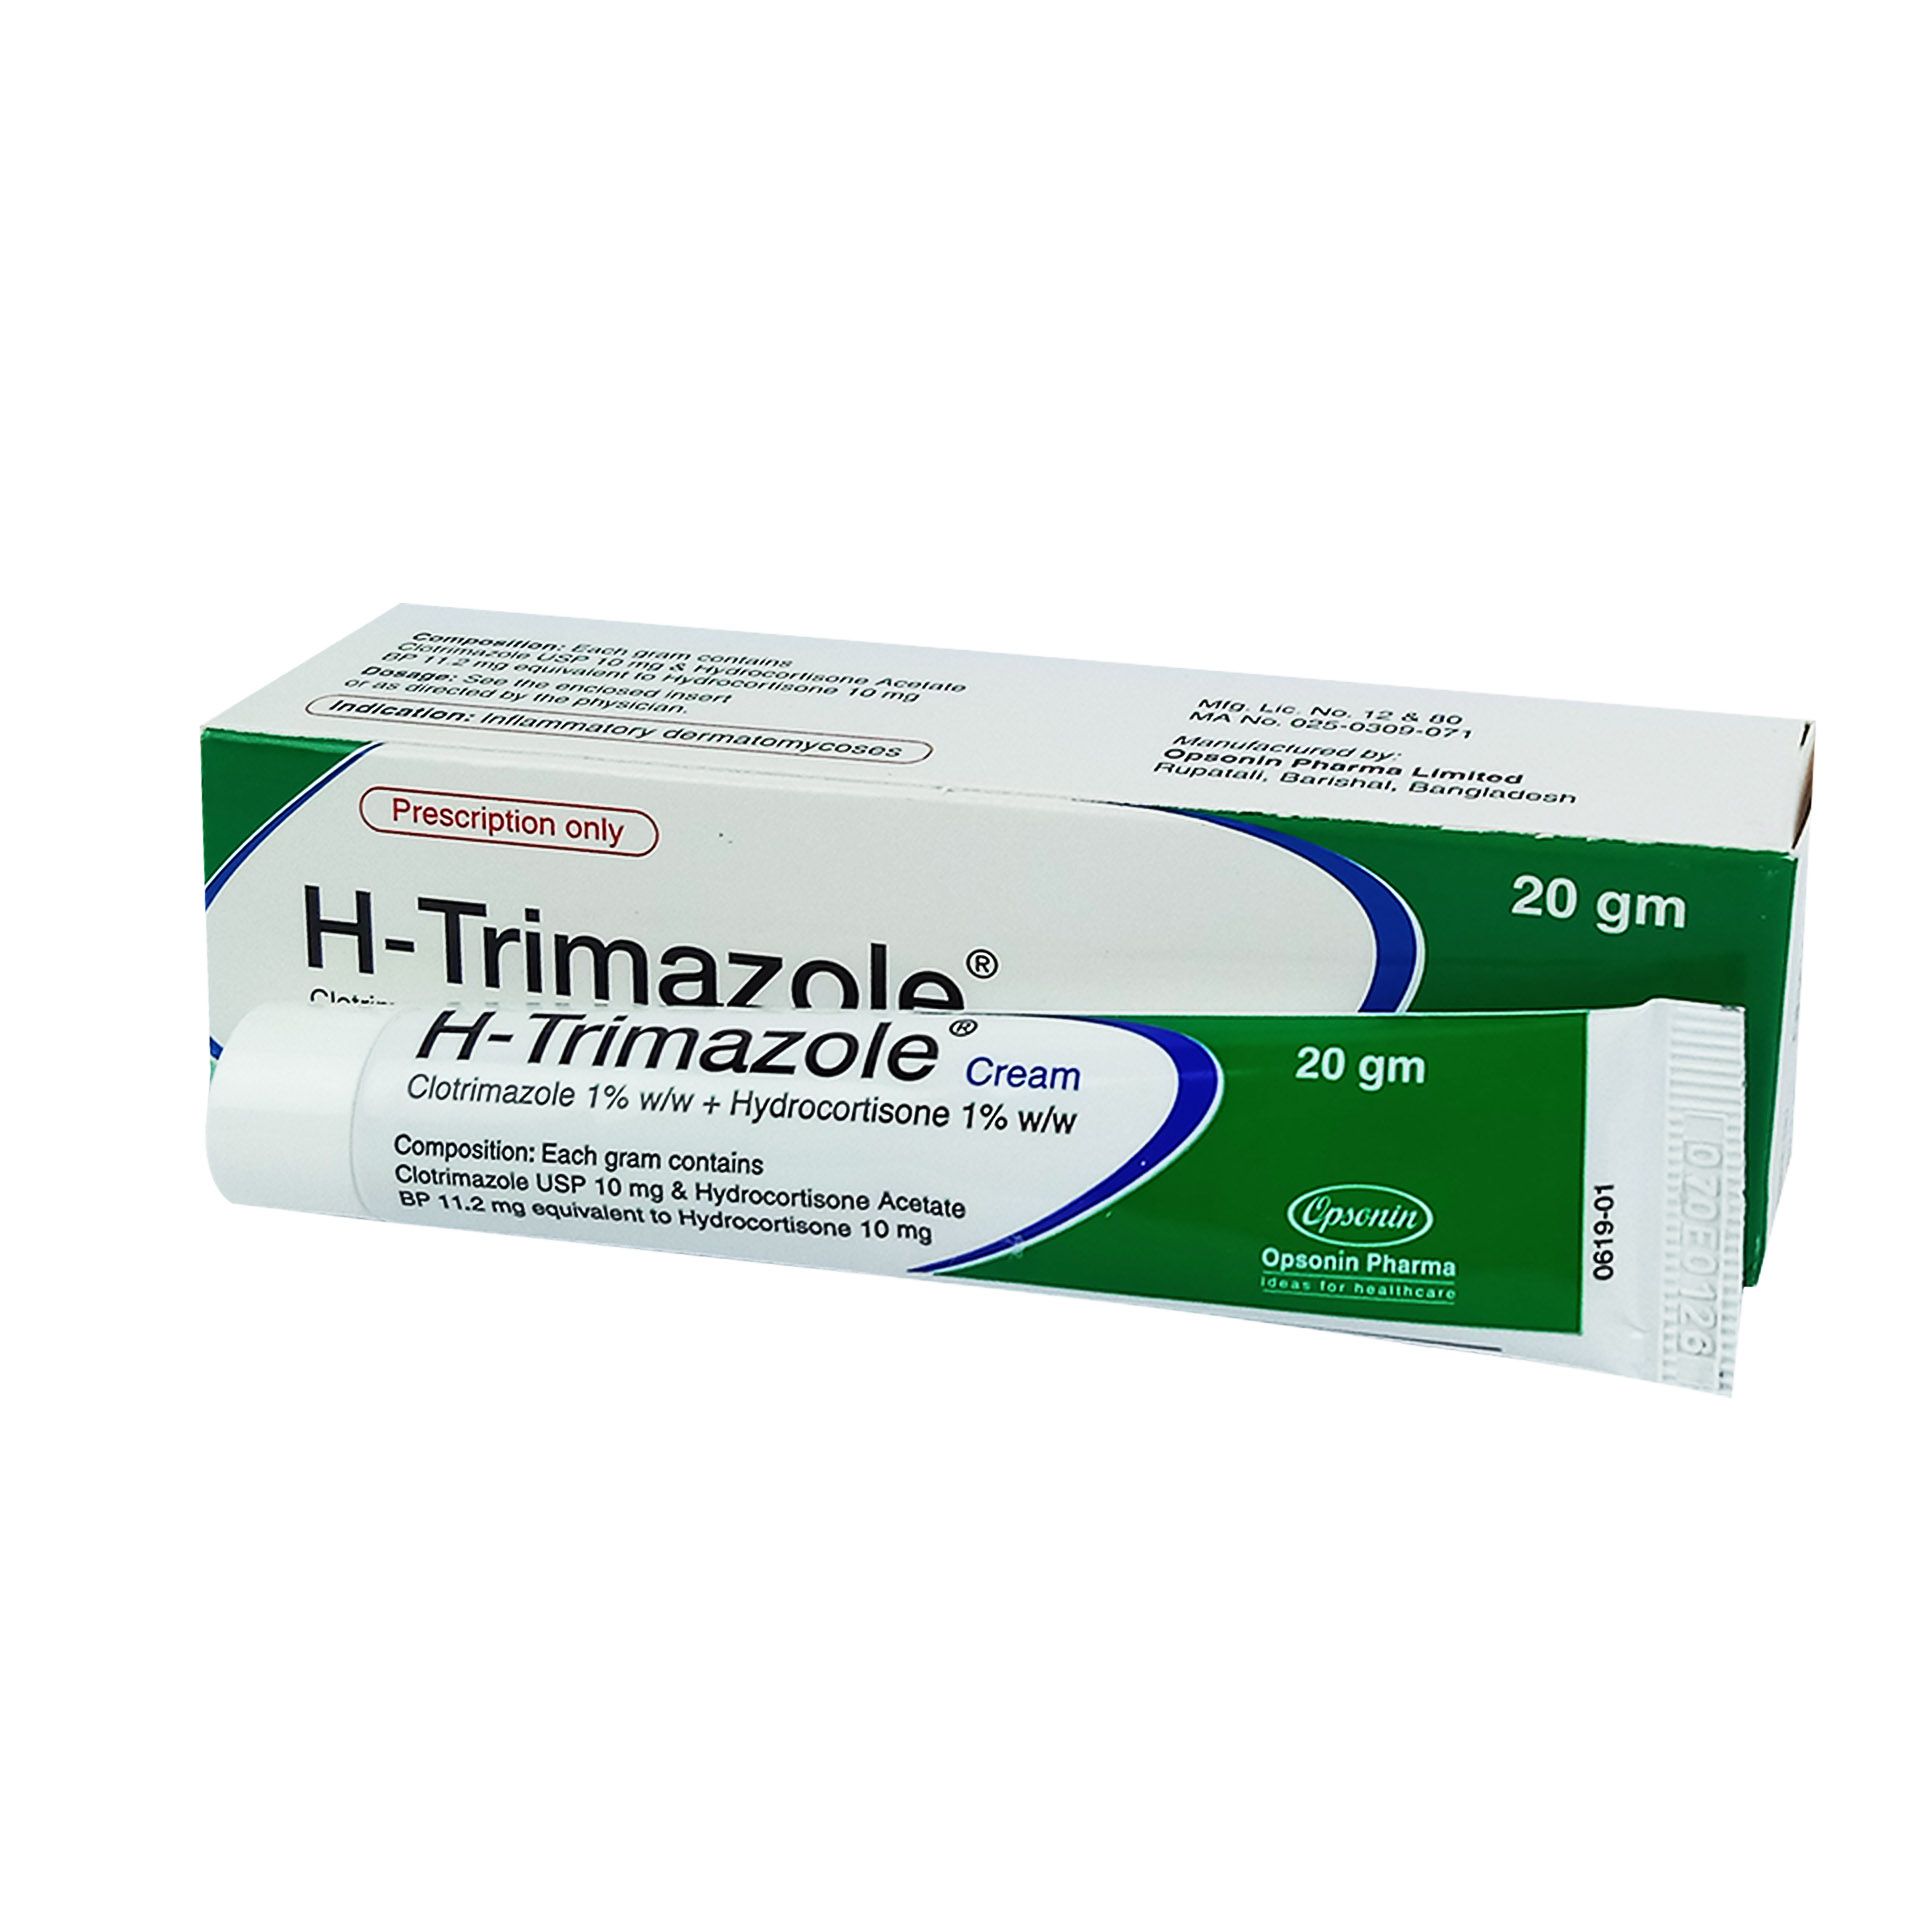 H-Trimazole 1%+1% Cream